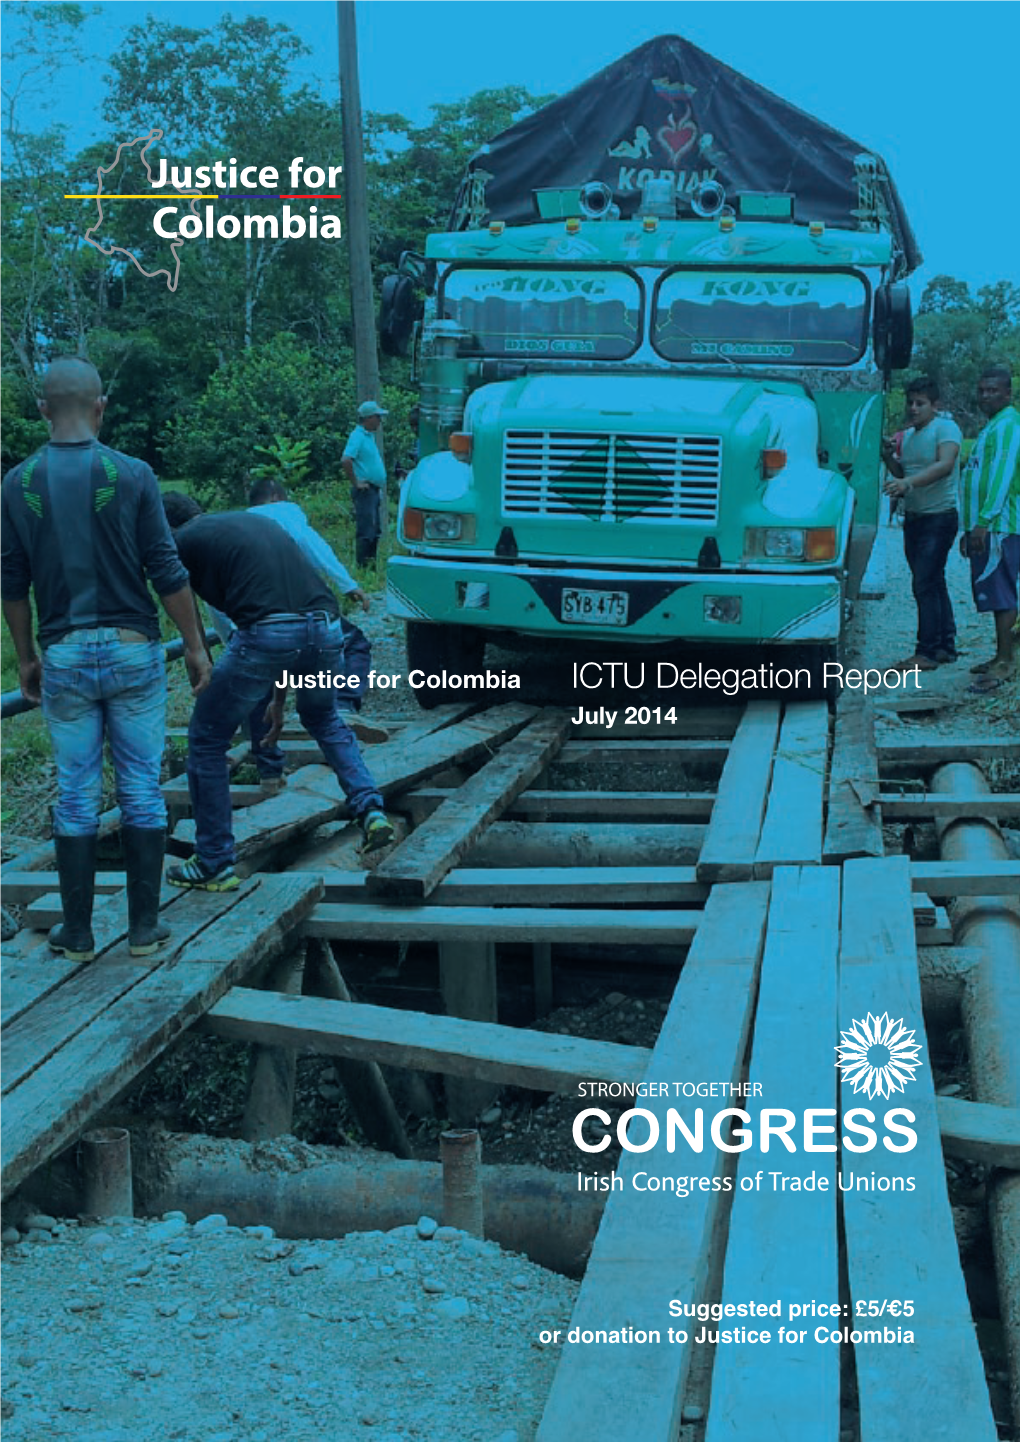 ICTU Delegation Report July 2014